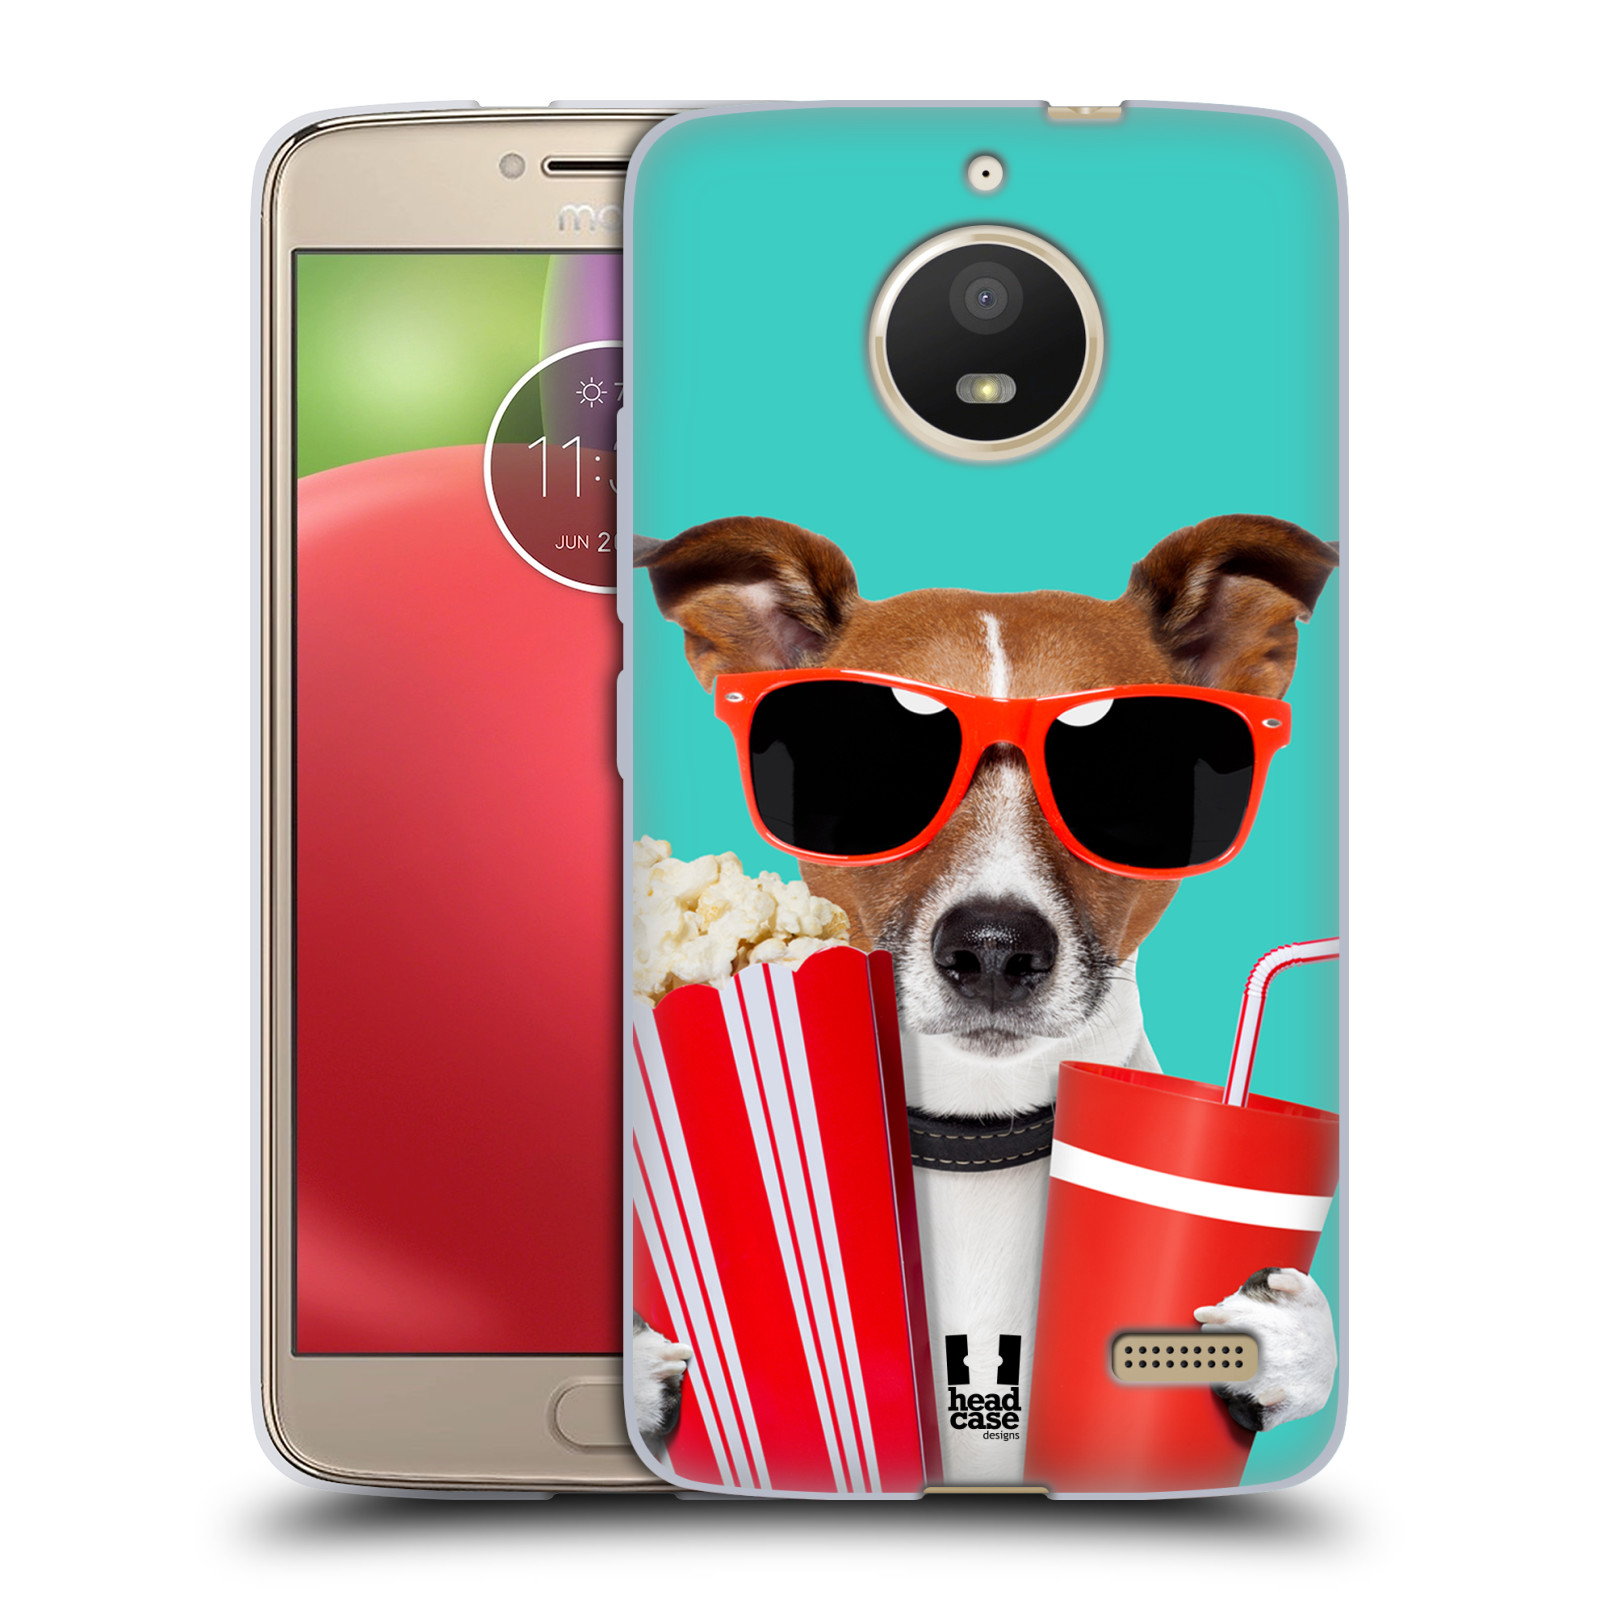 HEAD CASE silikonový obal na mobil Lenovo Moto E4 vzor Legrační zvířátka pejsek v kině s popkornem